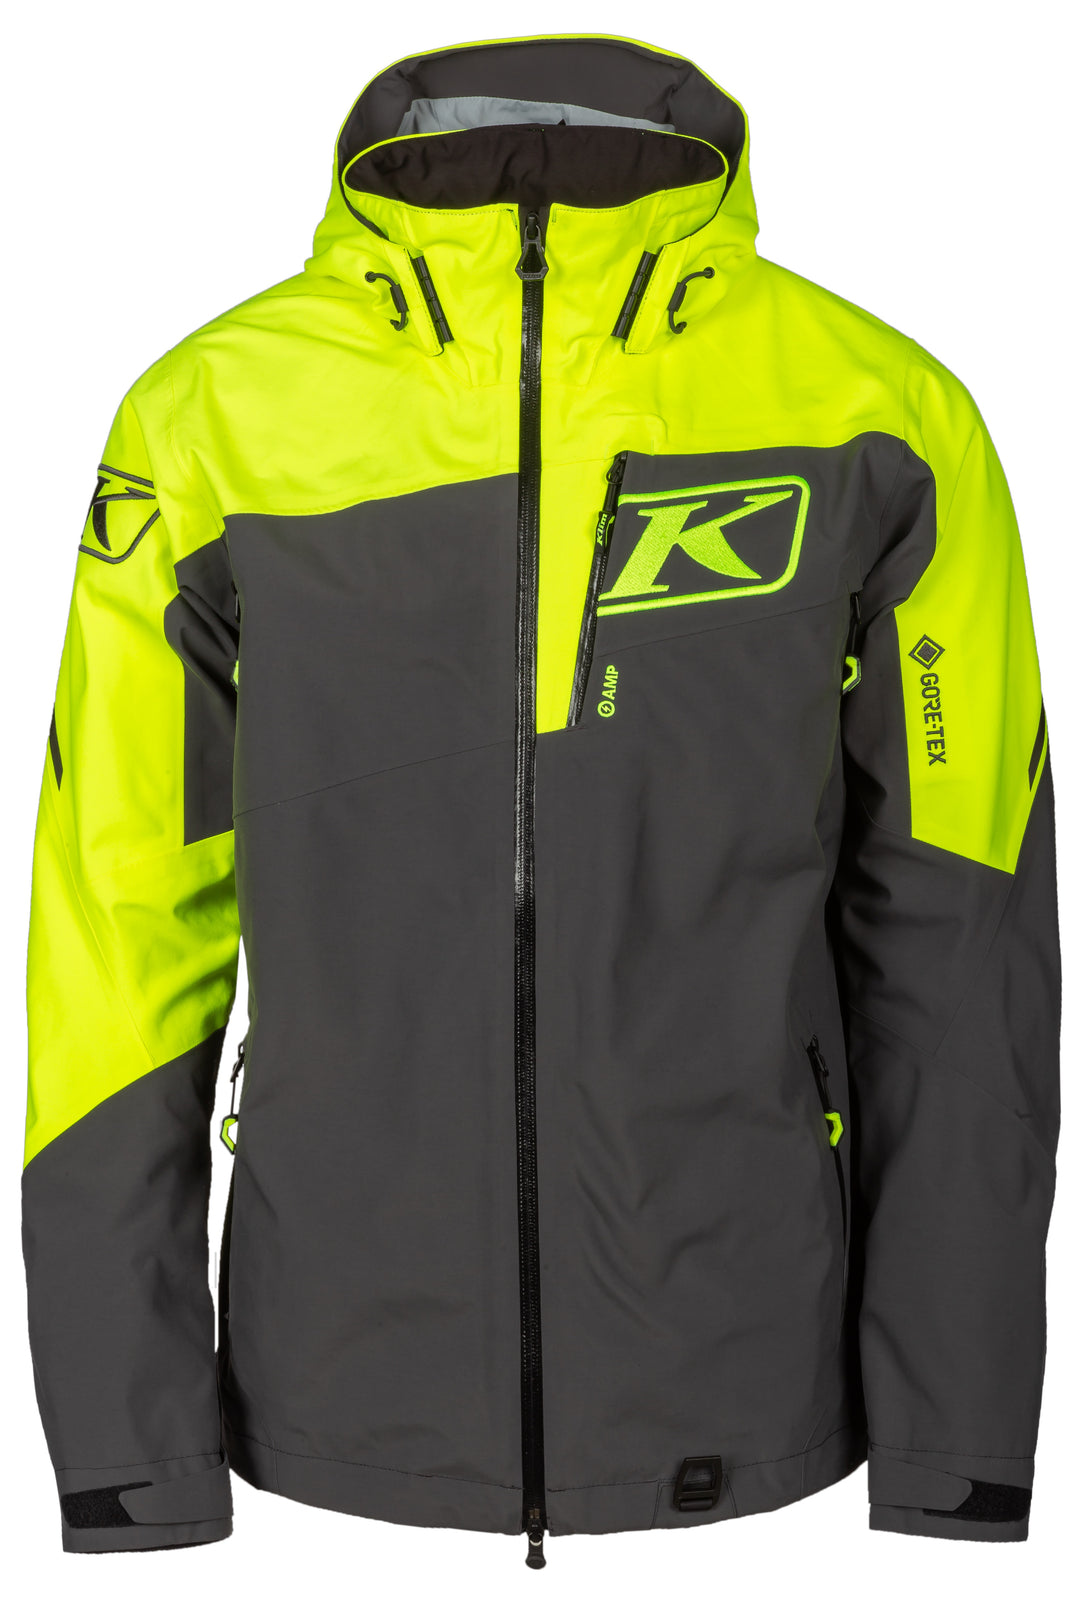 Klim,Adventure clothing , Klim Storm Jacket, 5045-004